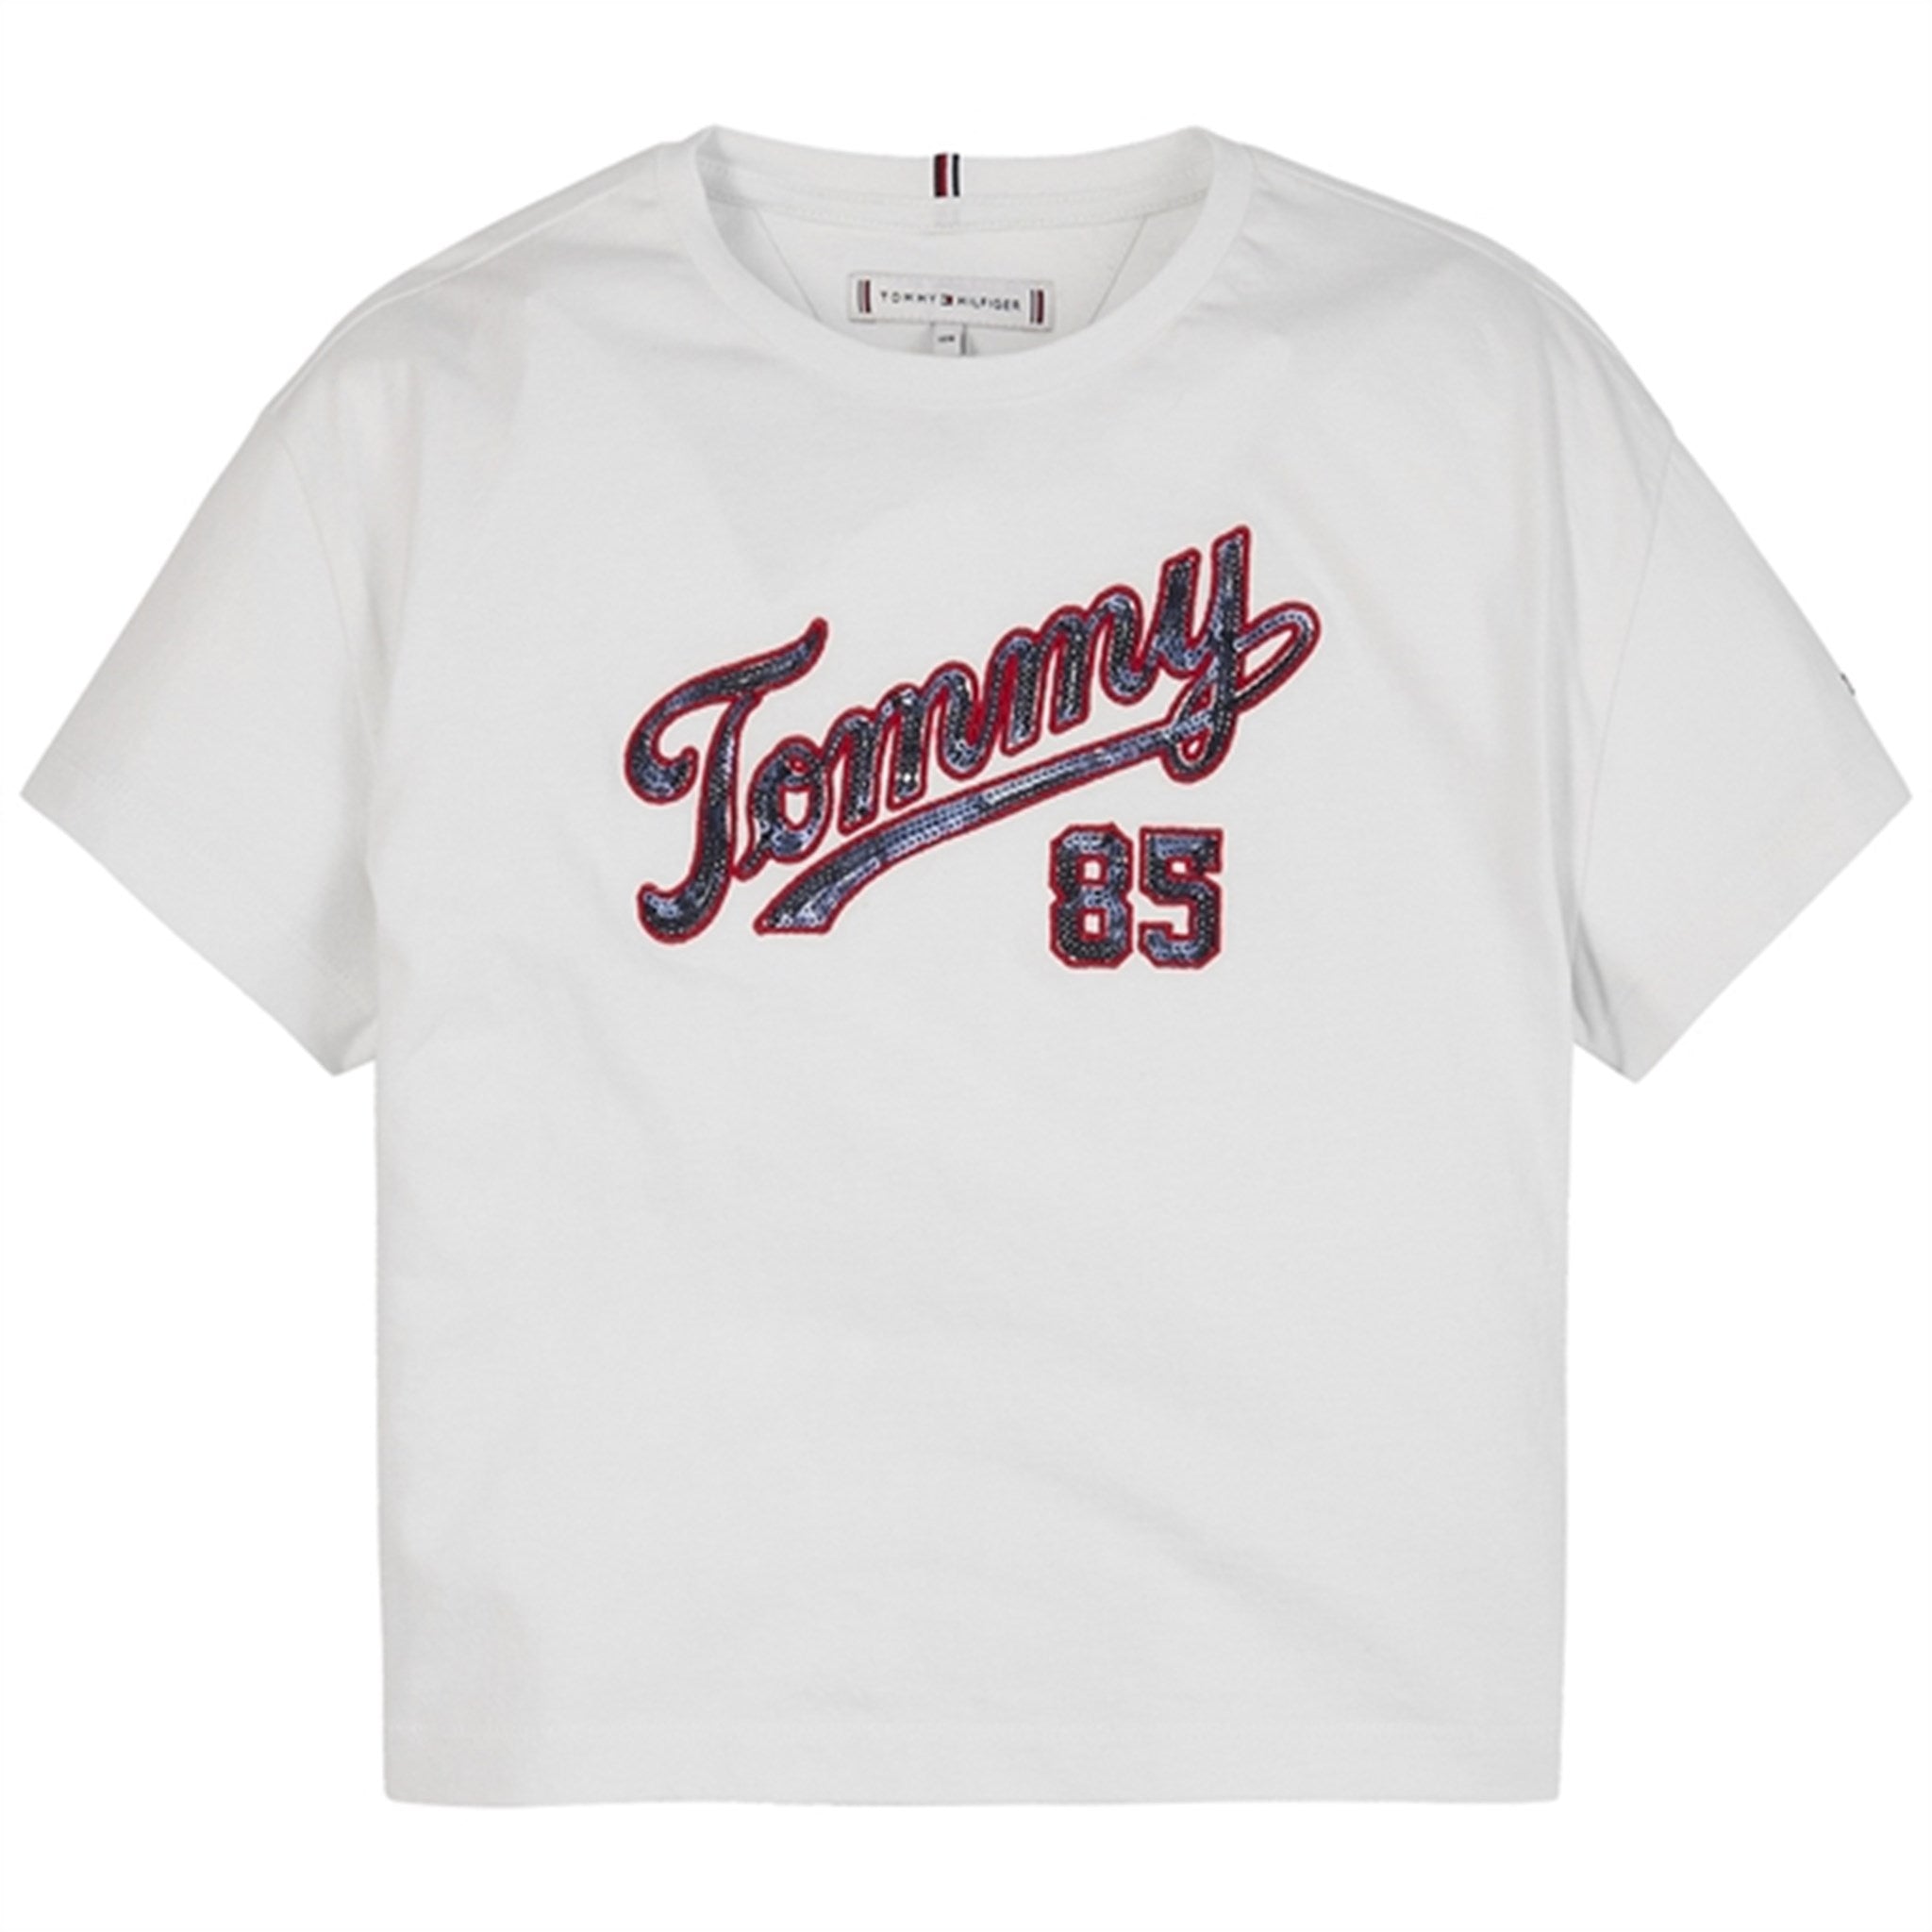 Tommy Hilfiger Paljet T-Shirt White